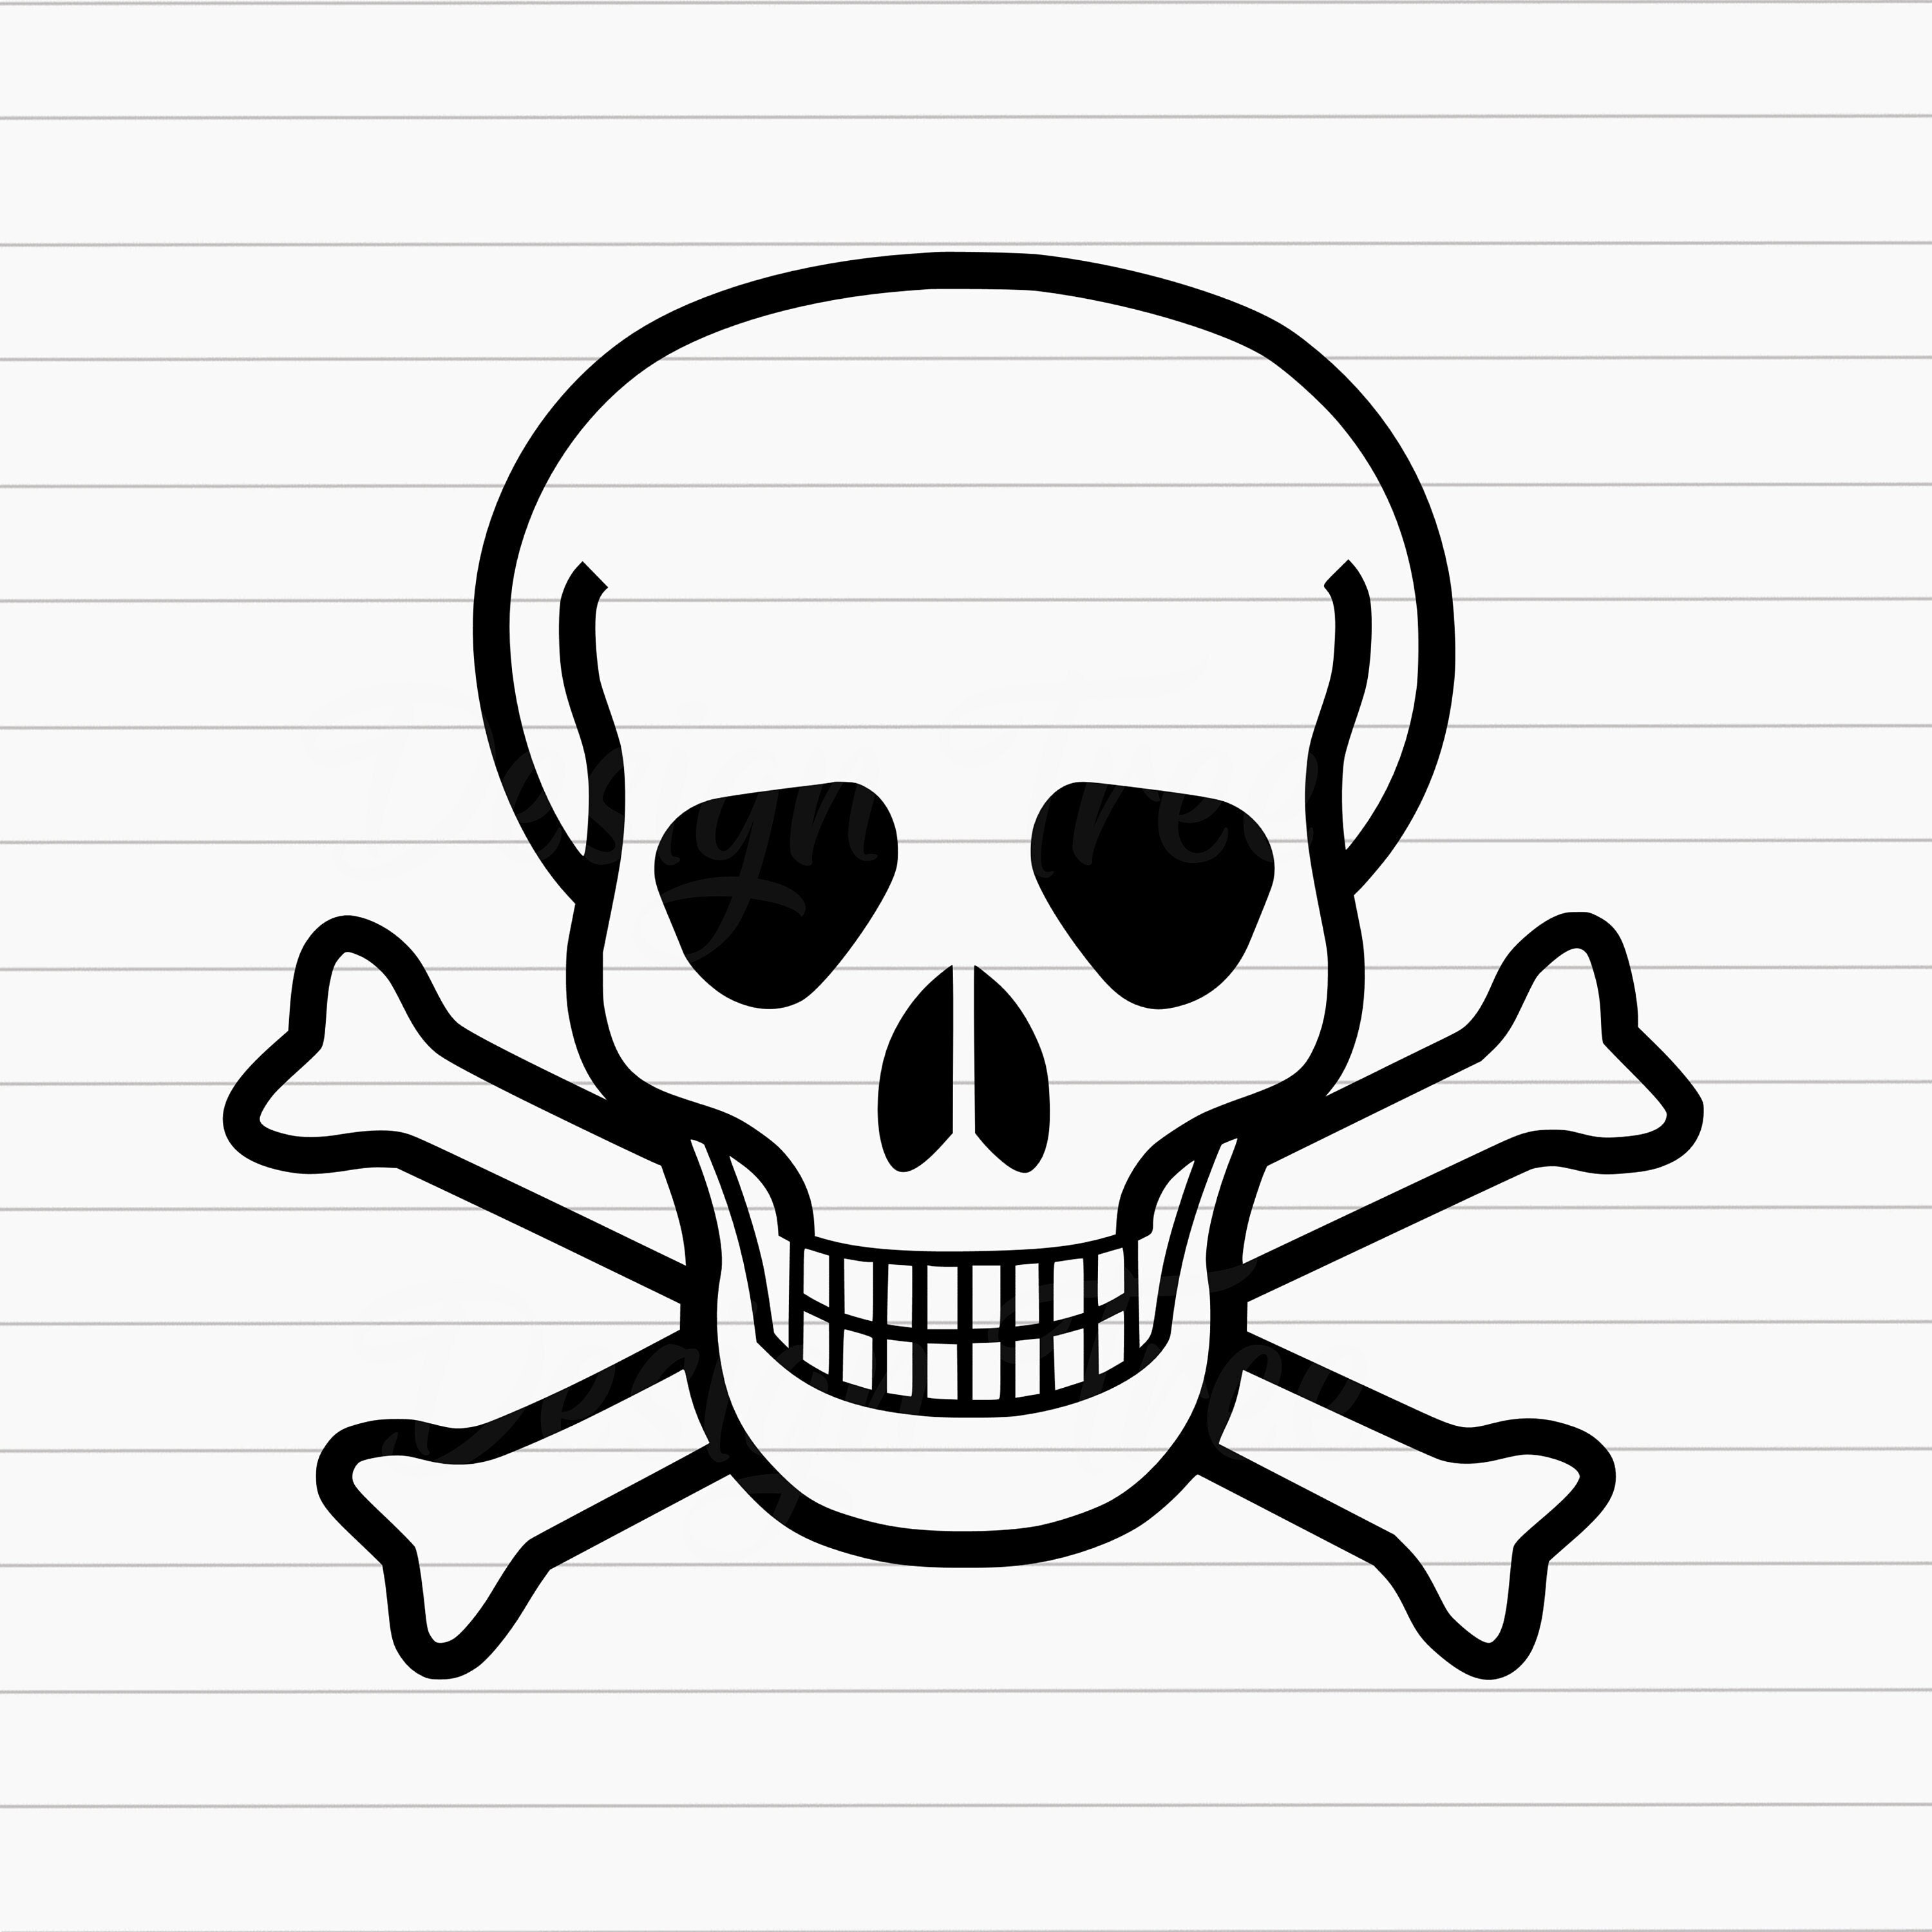 Skull Crossbones SVG, Pirate Skull Crossbones SVG, Jolly Roger SVG, Skull  Crossbones Cut File, Skull Crossbones Vector, Cricut, Silhouette